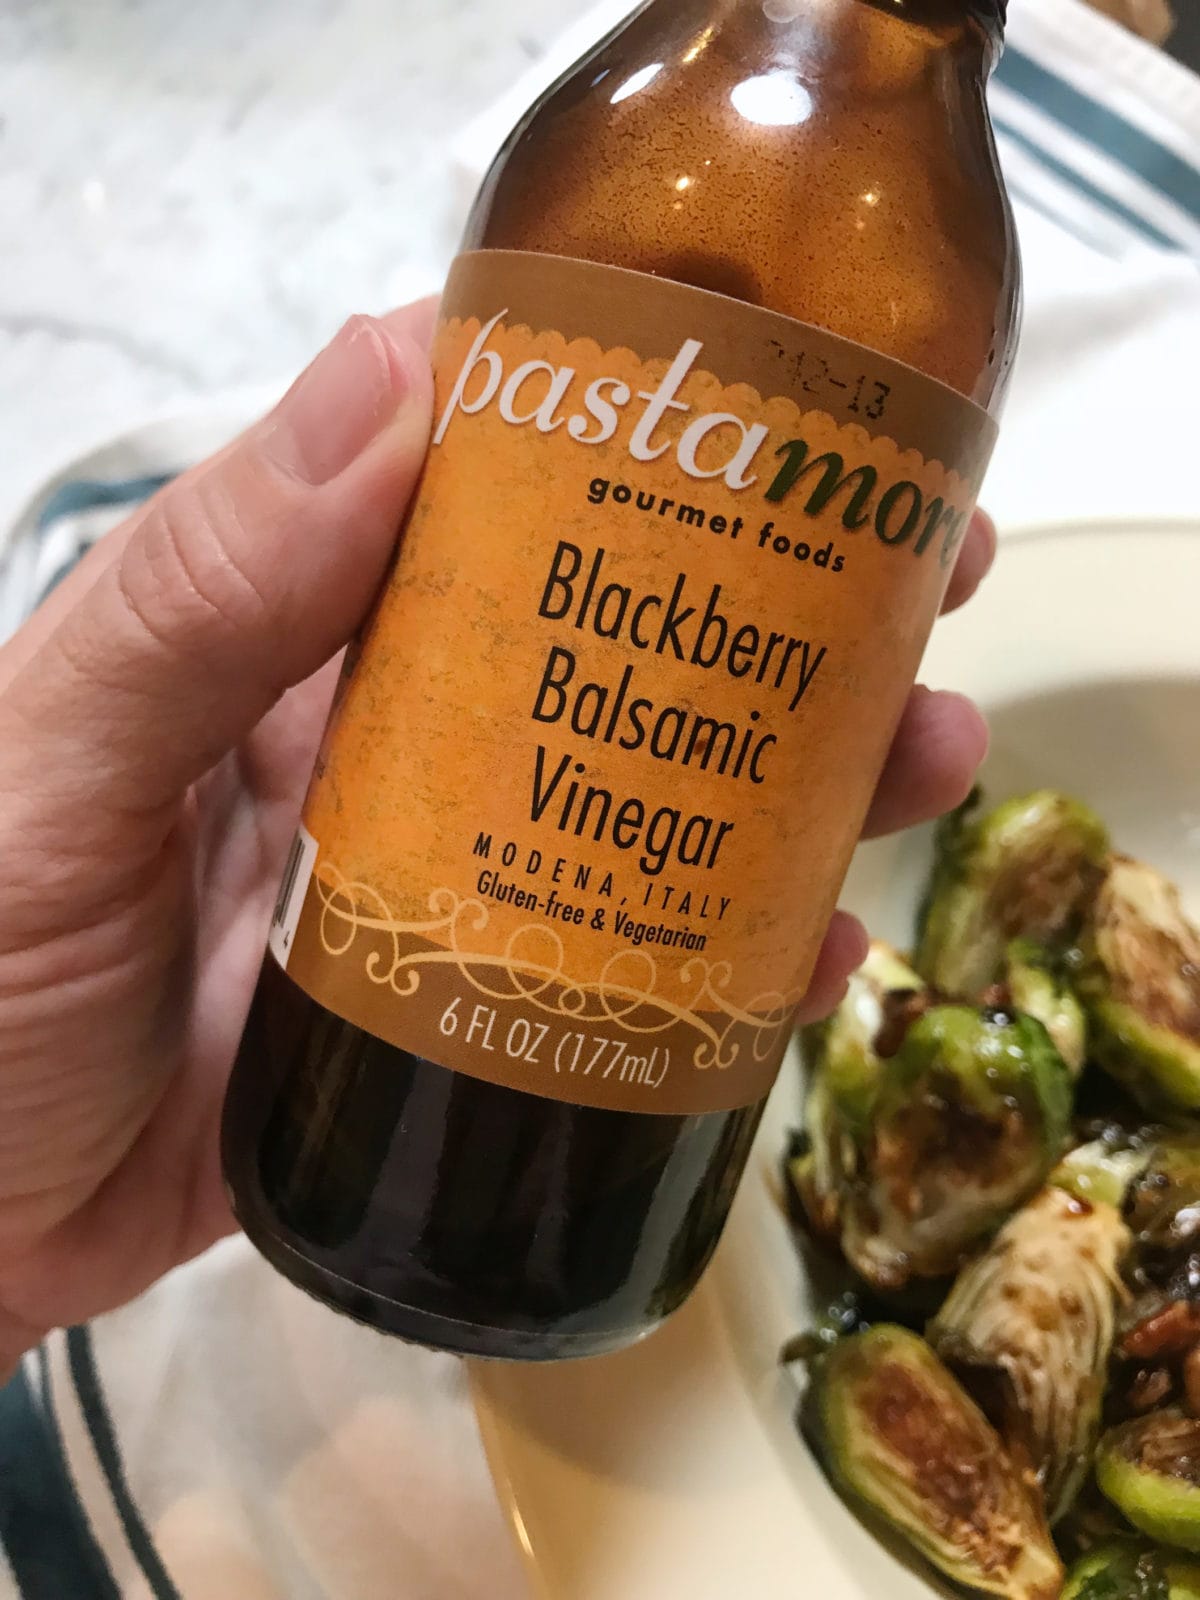 Blackberry balsamic vinegar